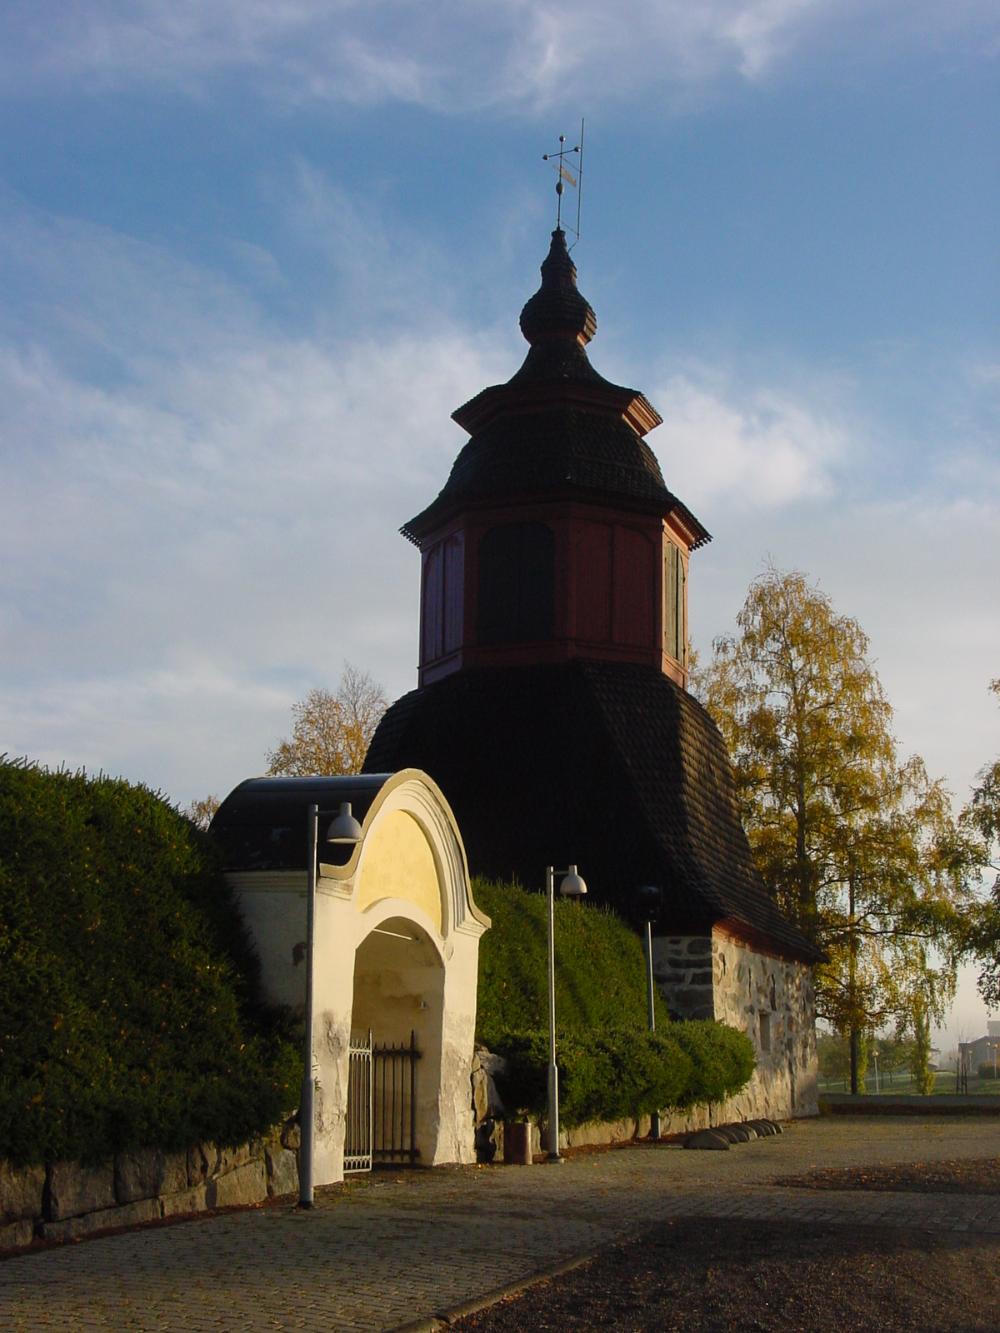 Keskiaikainen kirkon portti ja melko tummana näkyvä kellotapuli taustalla taivas.